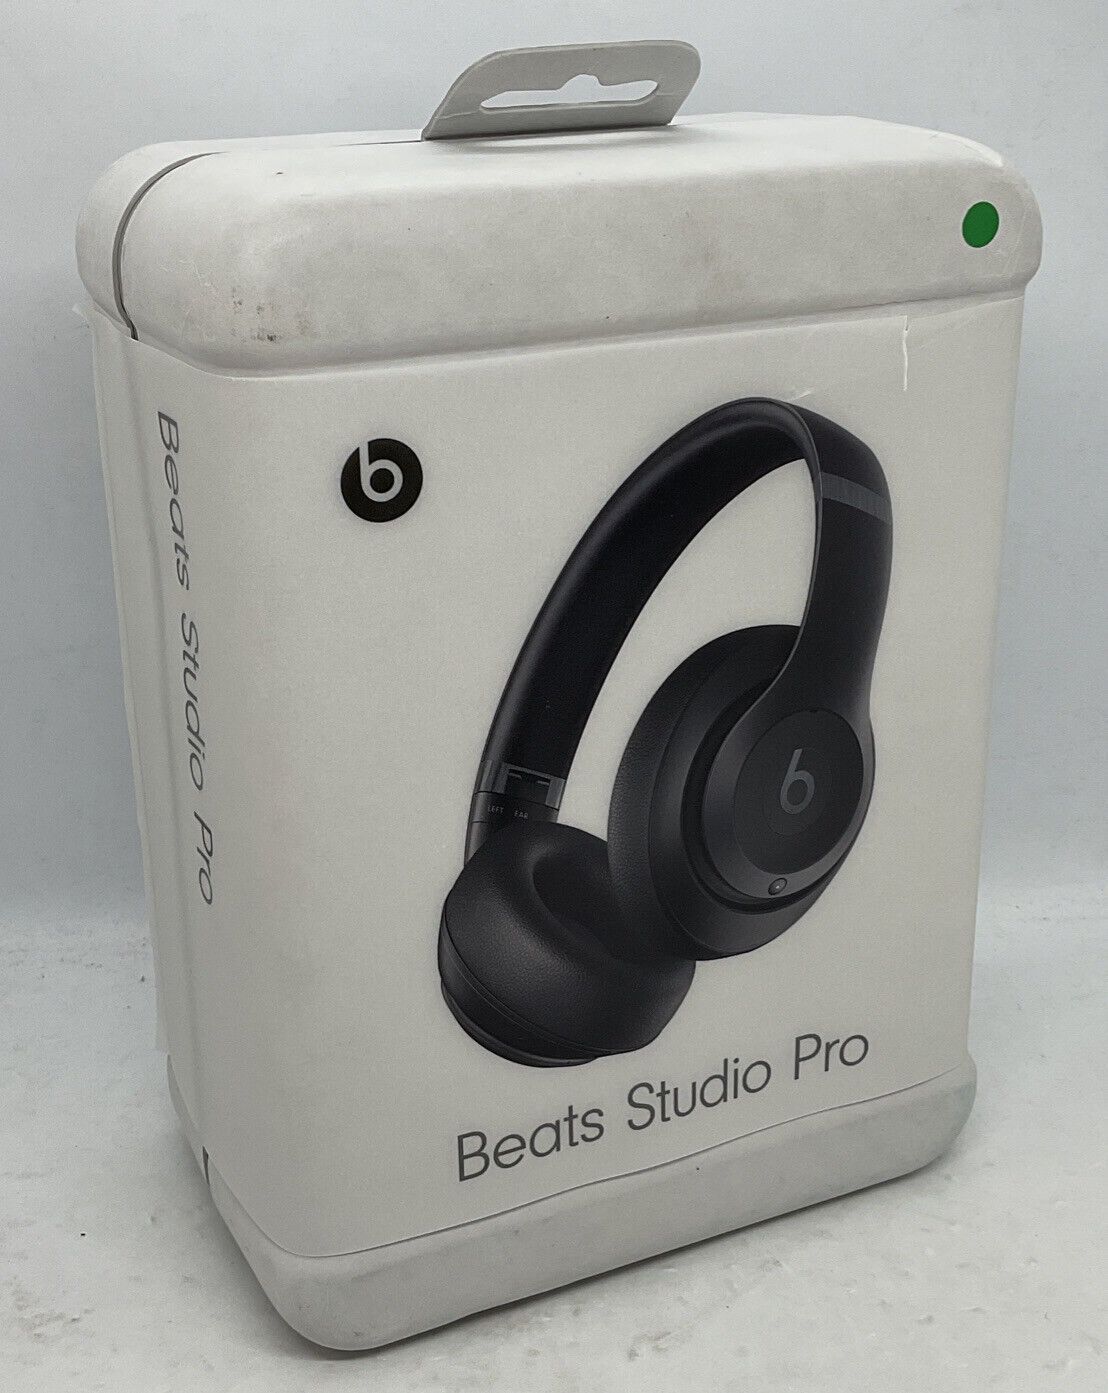 Beats Studio Pros